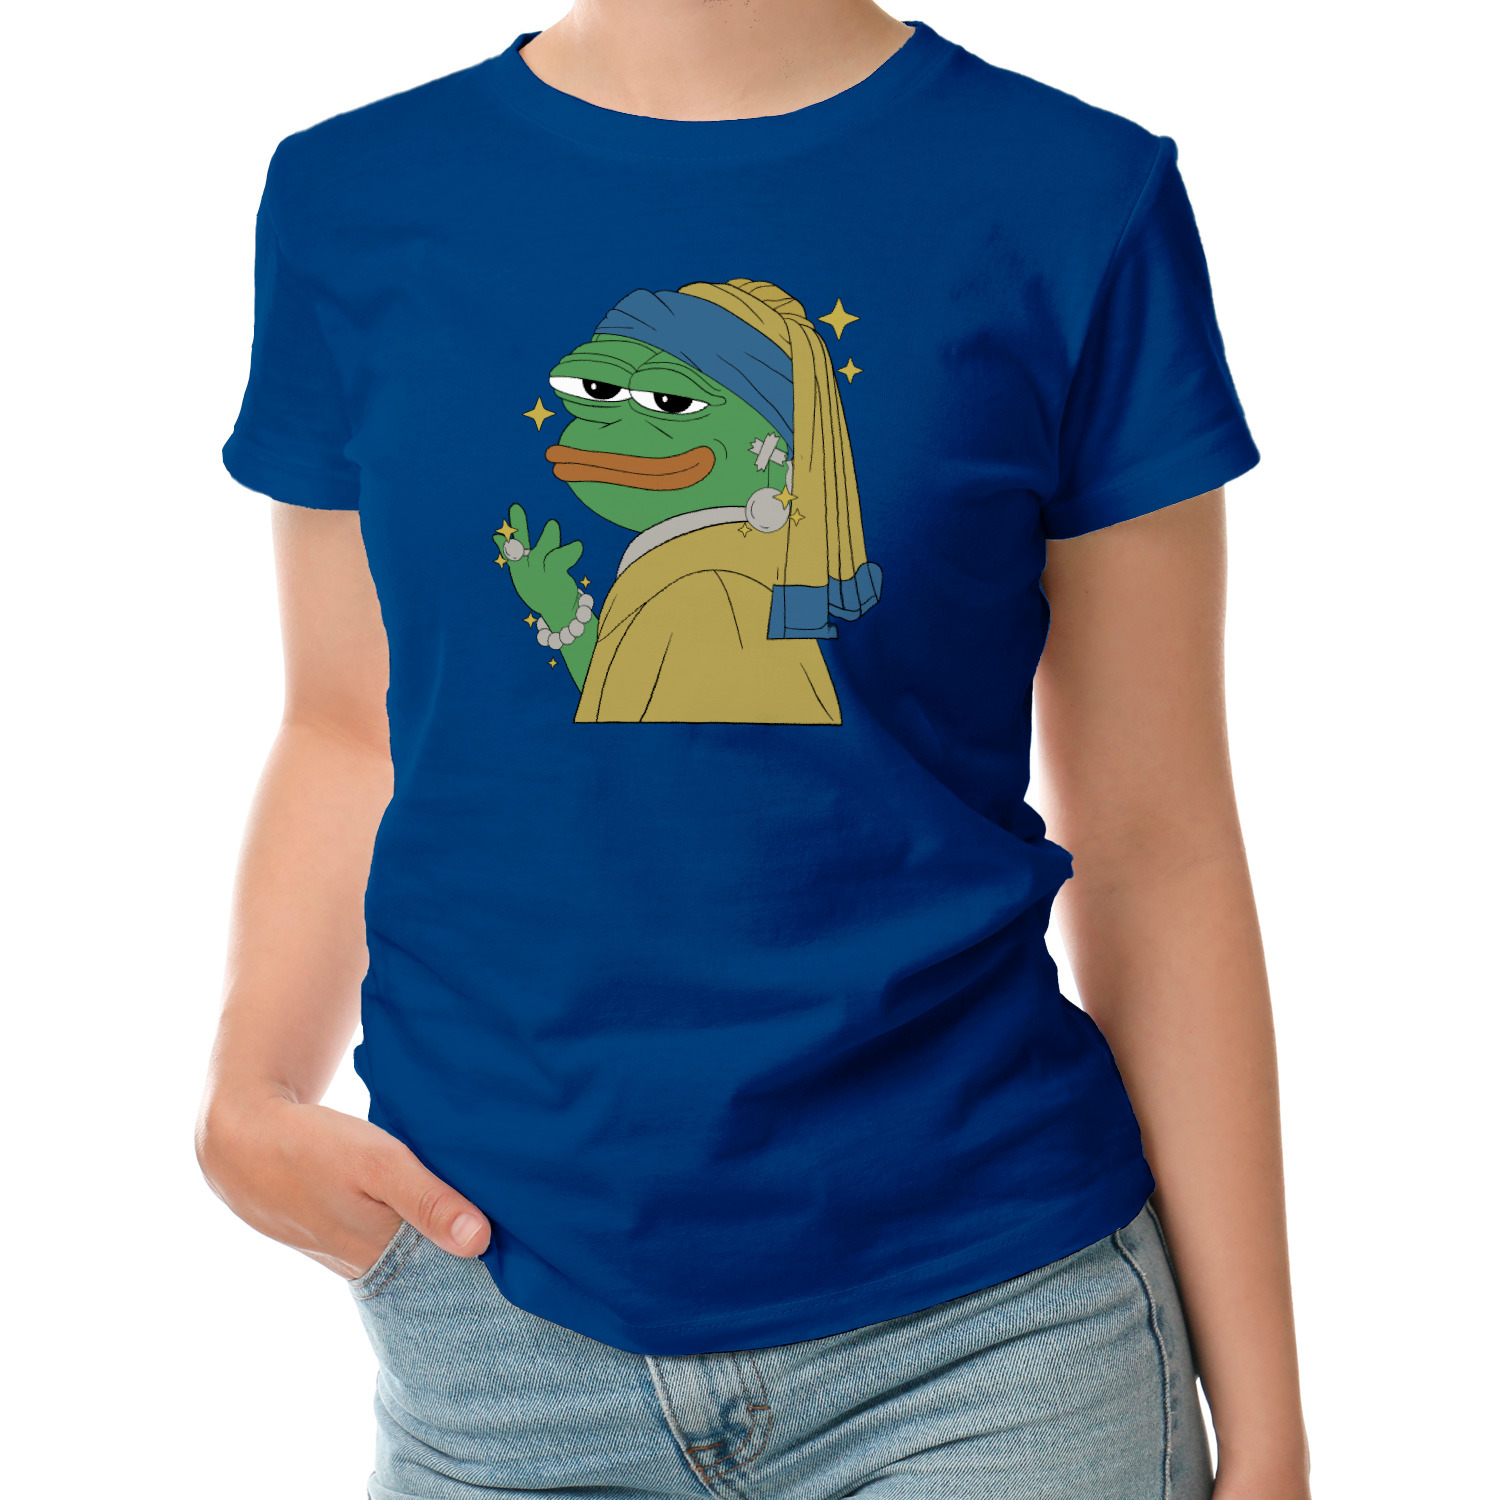 Футболка пепе. Футболка с лягушкой Пепе. Футболка с лягушкой. Купить женскую футболку с лягушками. Купить футболку с лягушкой хлопок.